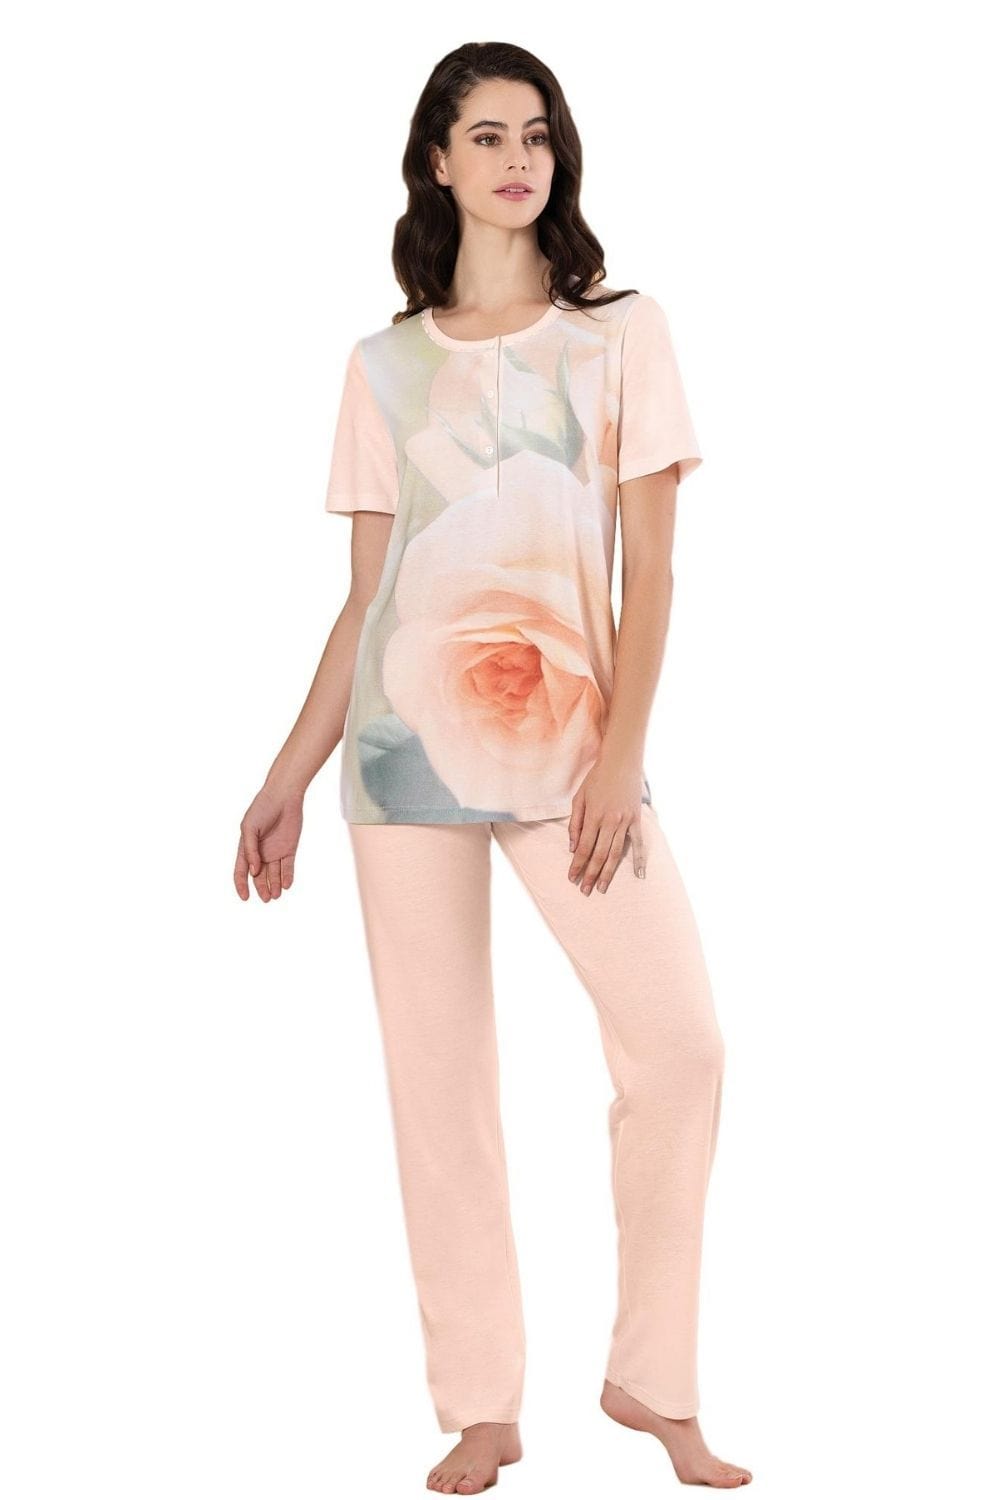 Linclalor Pyjamas 100% Cotton Floral Print Pyjamas - Peach or Blue - 10 to 26